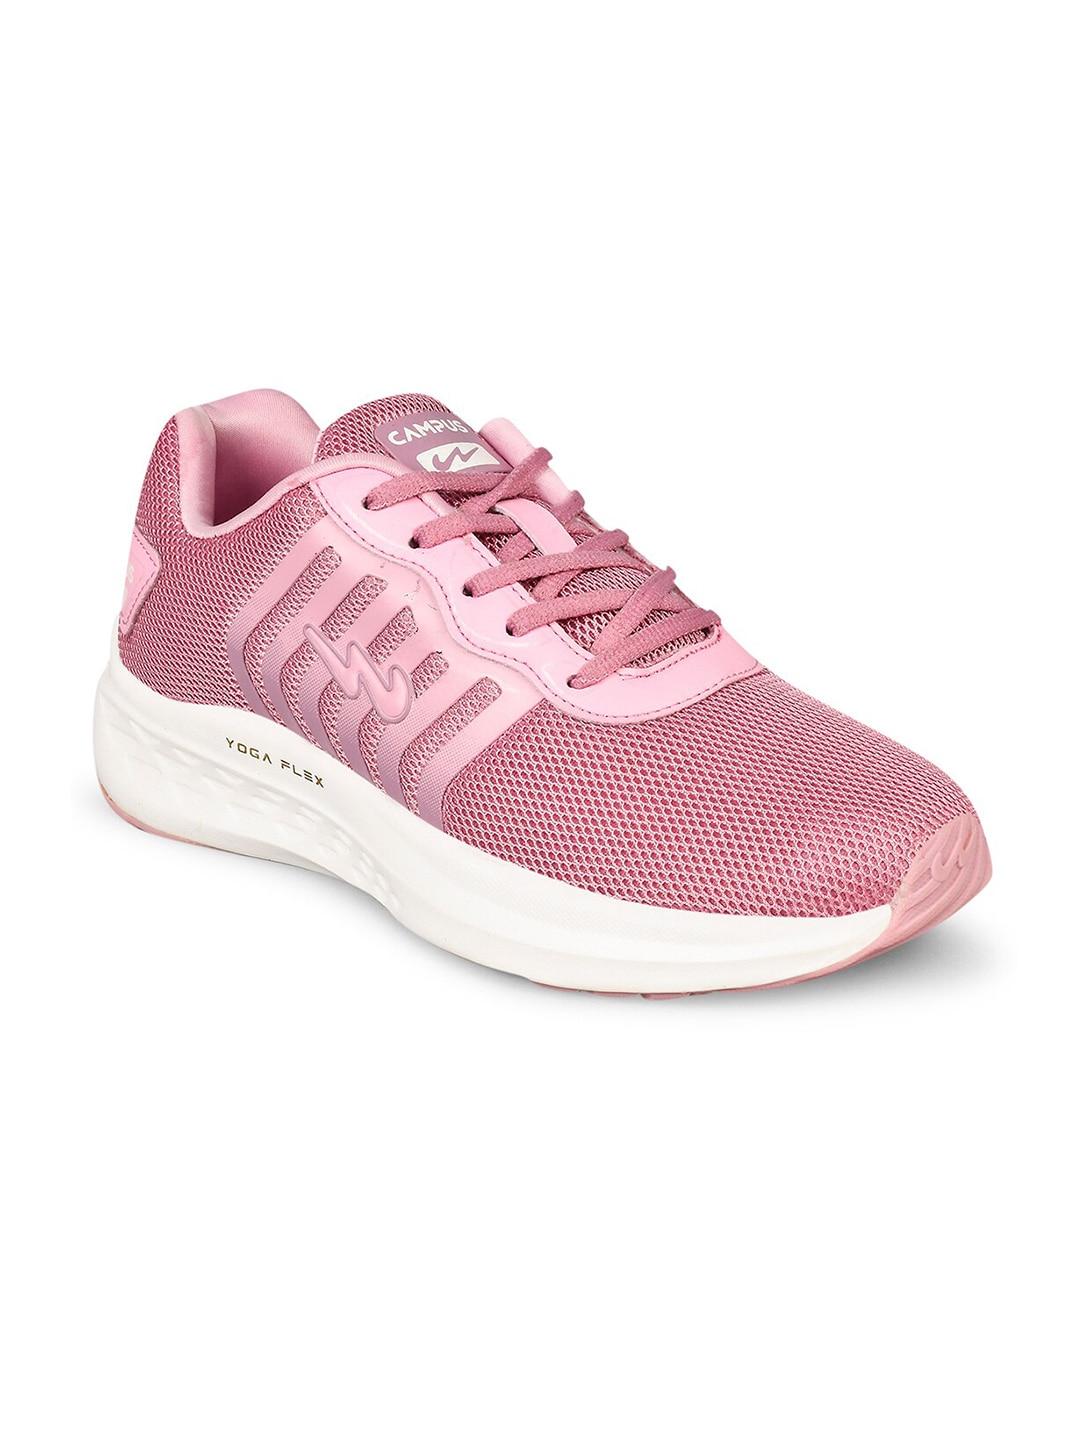 Campus Women Pink Mesh Running Shoes